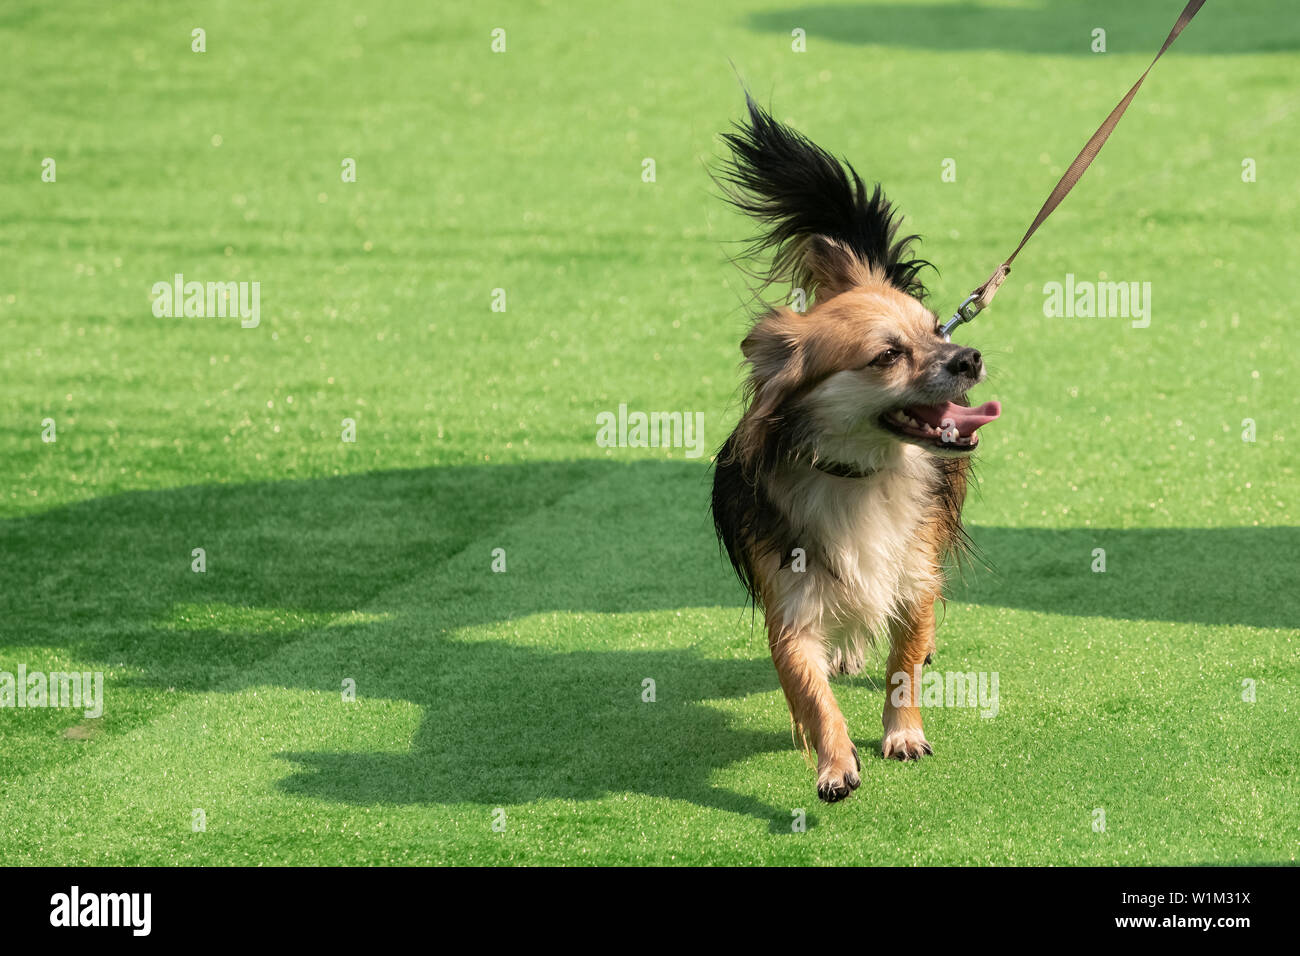 Descripción: De color blanco con rojo perro Chihuahua adulto de pie sobre la hierba verde vertical Foto de stock